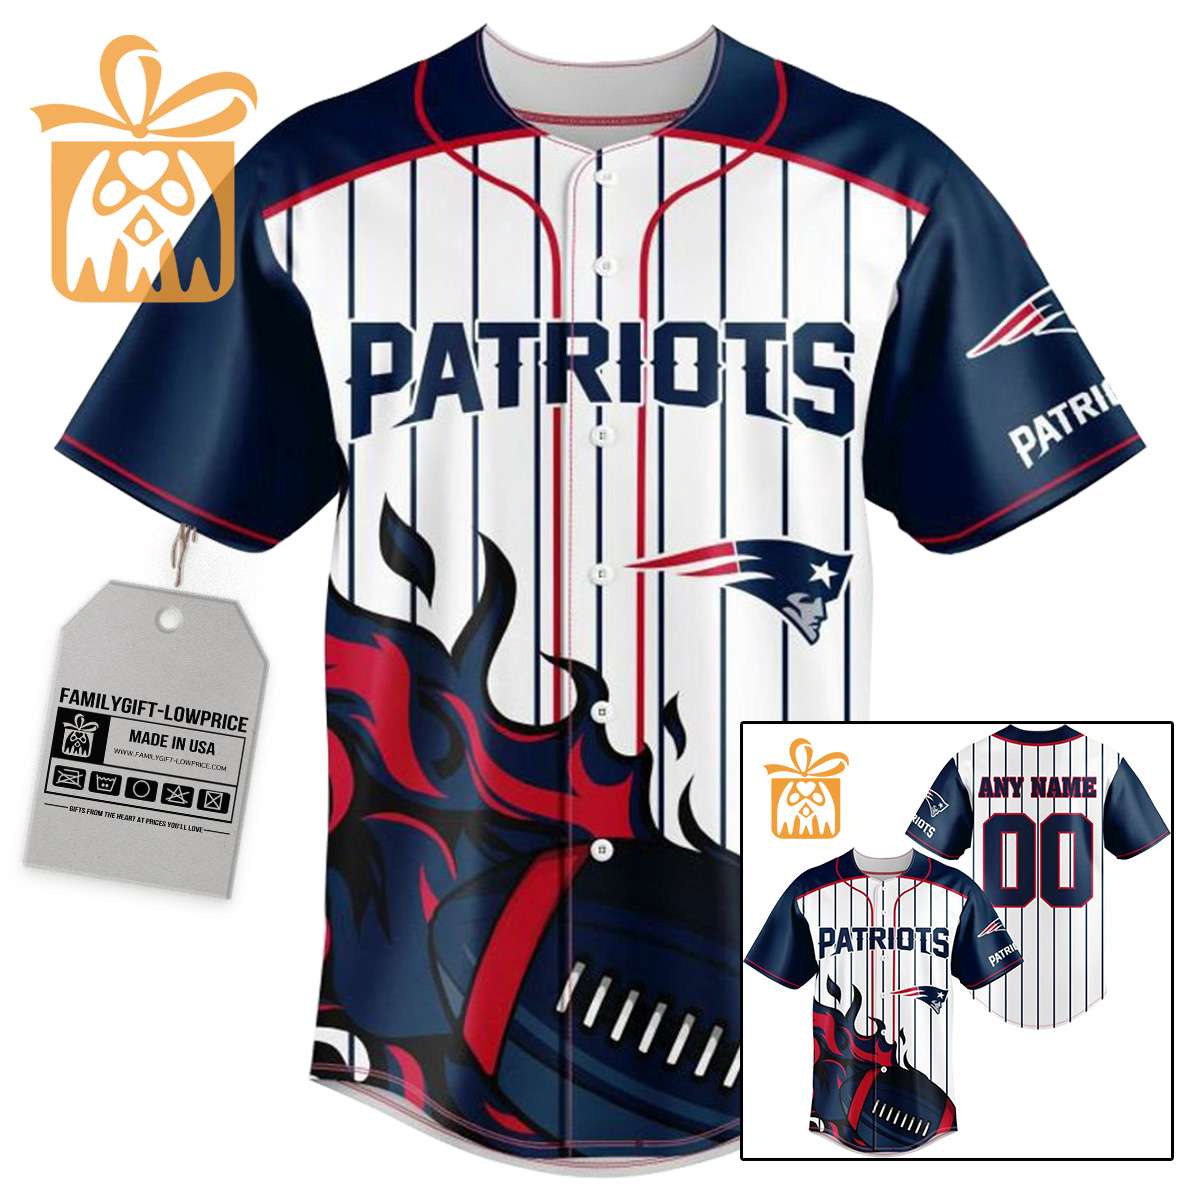 NFL Baseball Jersey - Patriots Baseball Jersey TShirt - Personalized Baseball Jerseys